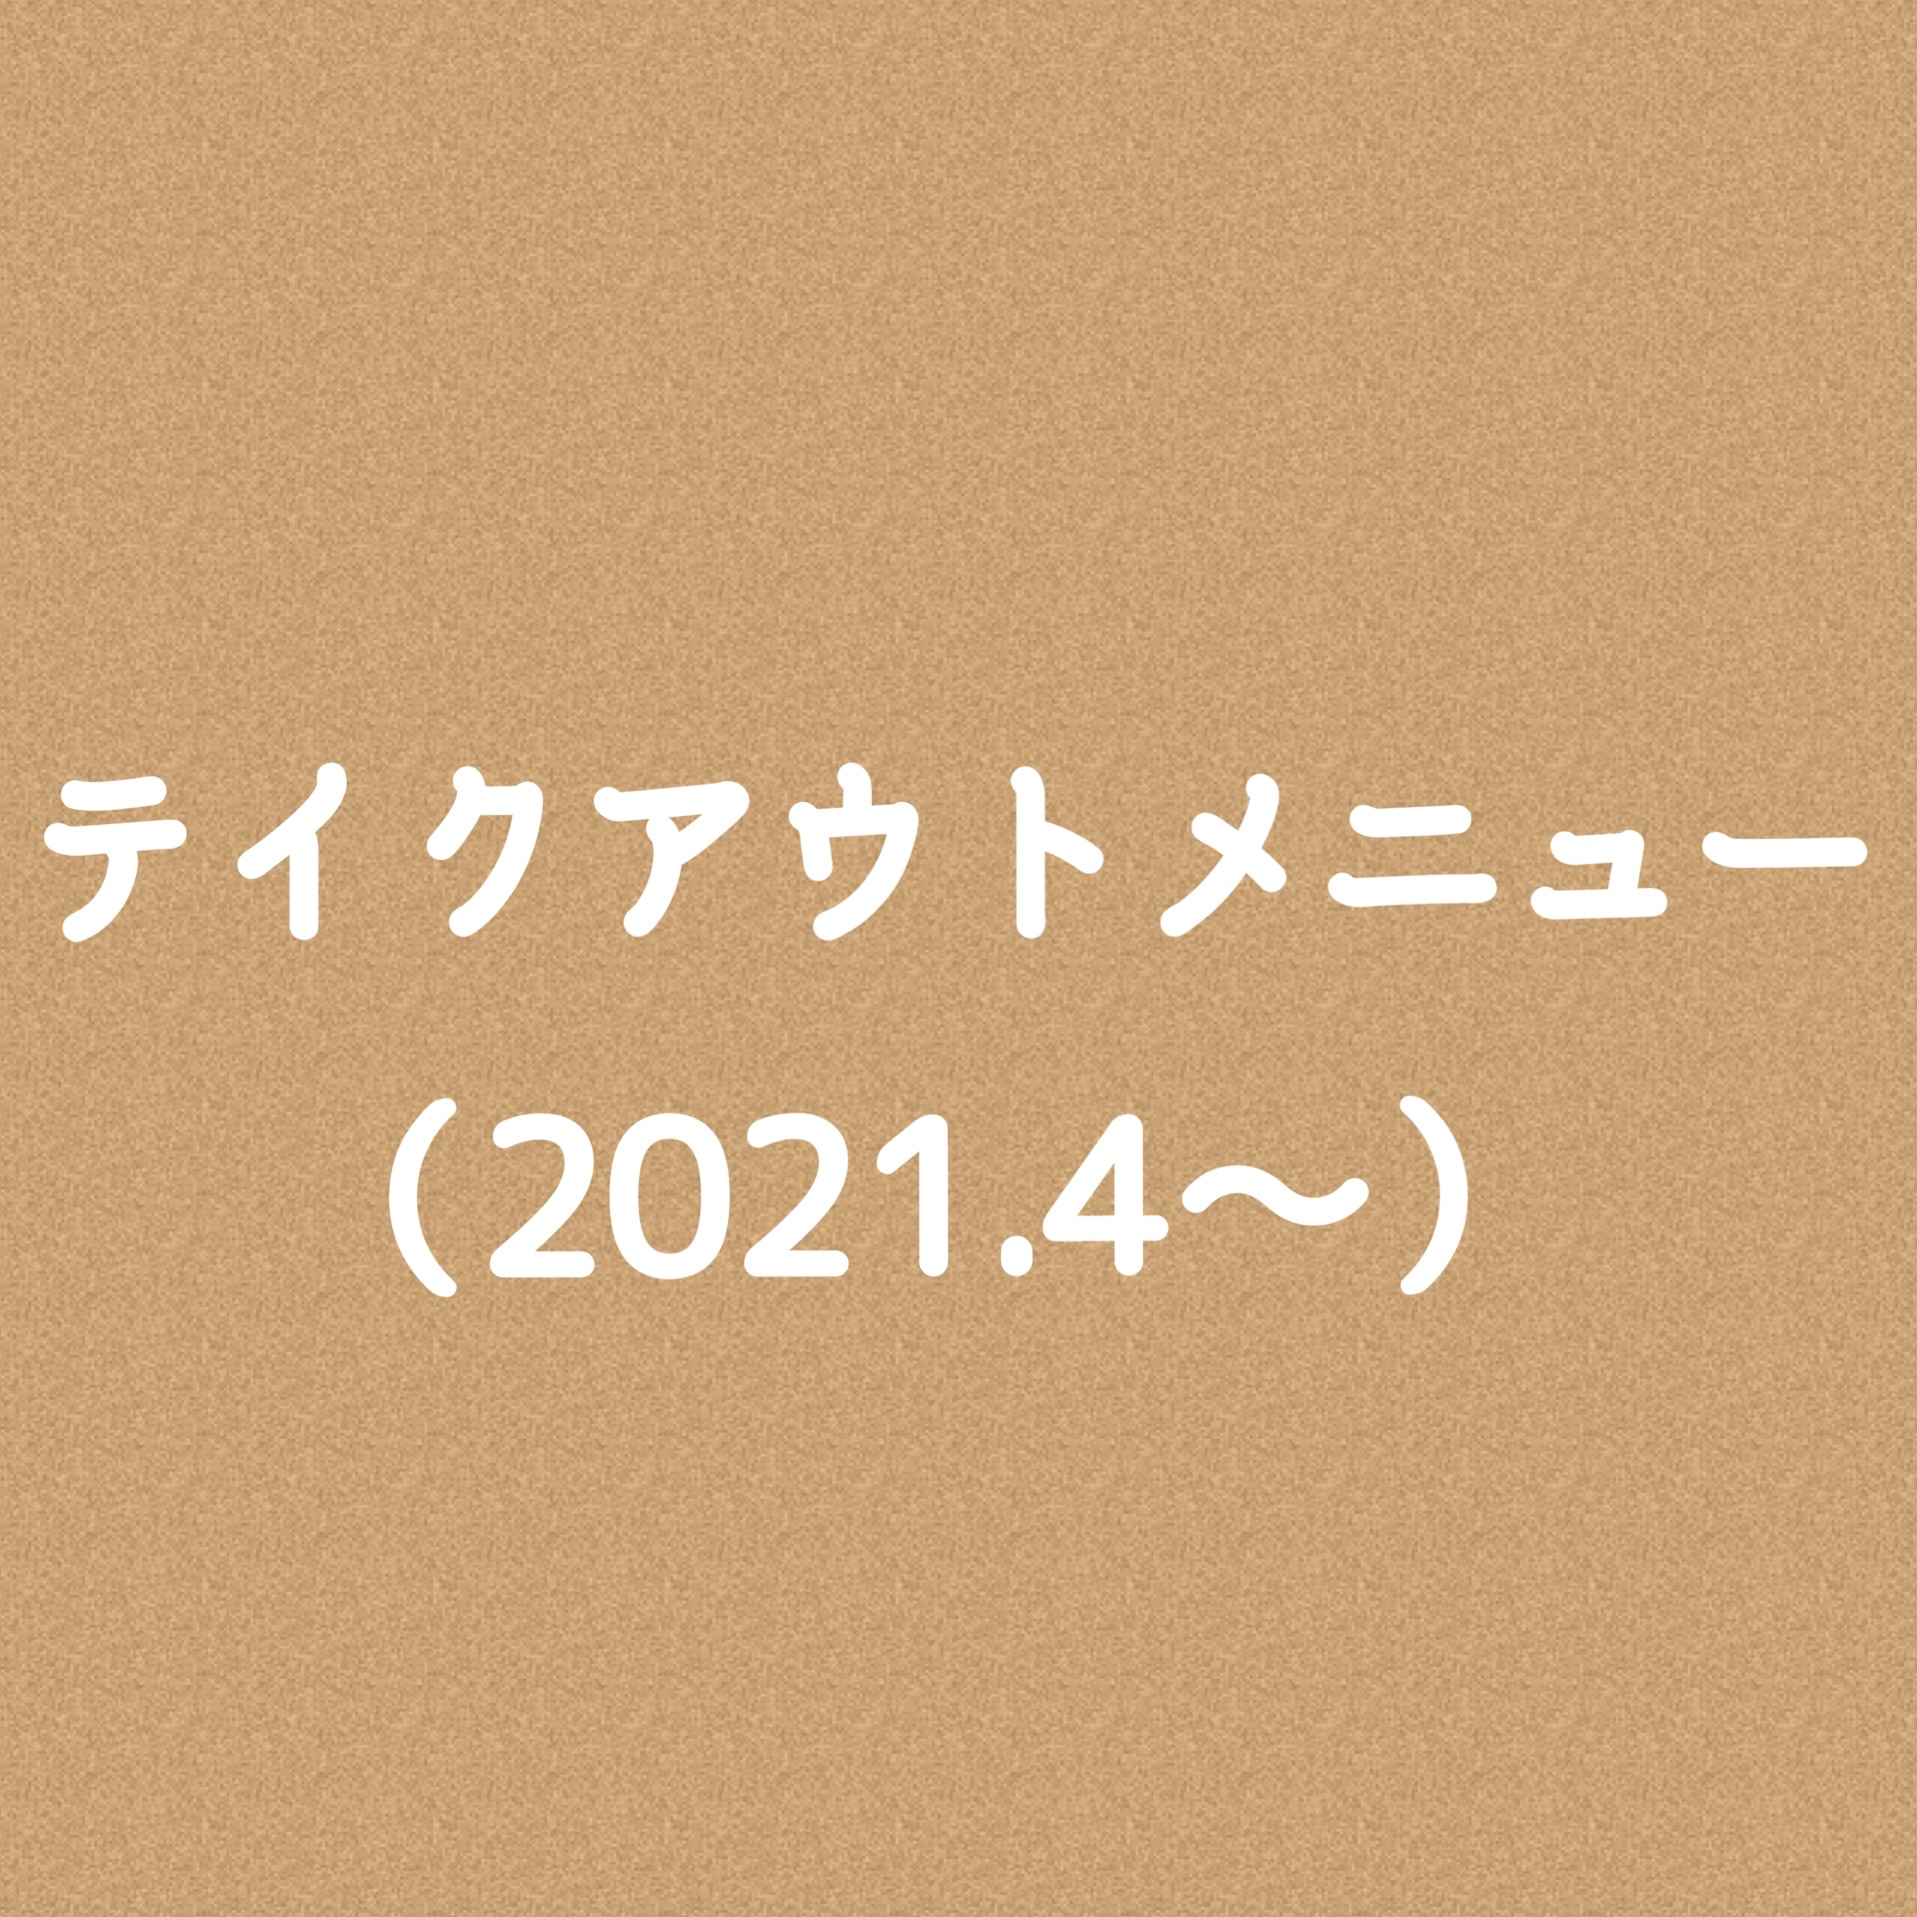 テイクアウトメニュー(2021.4〜)